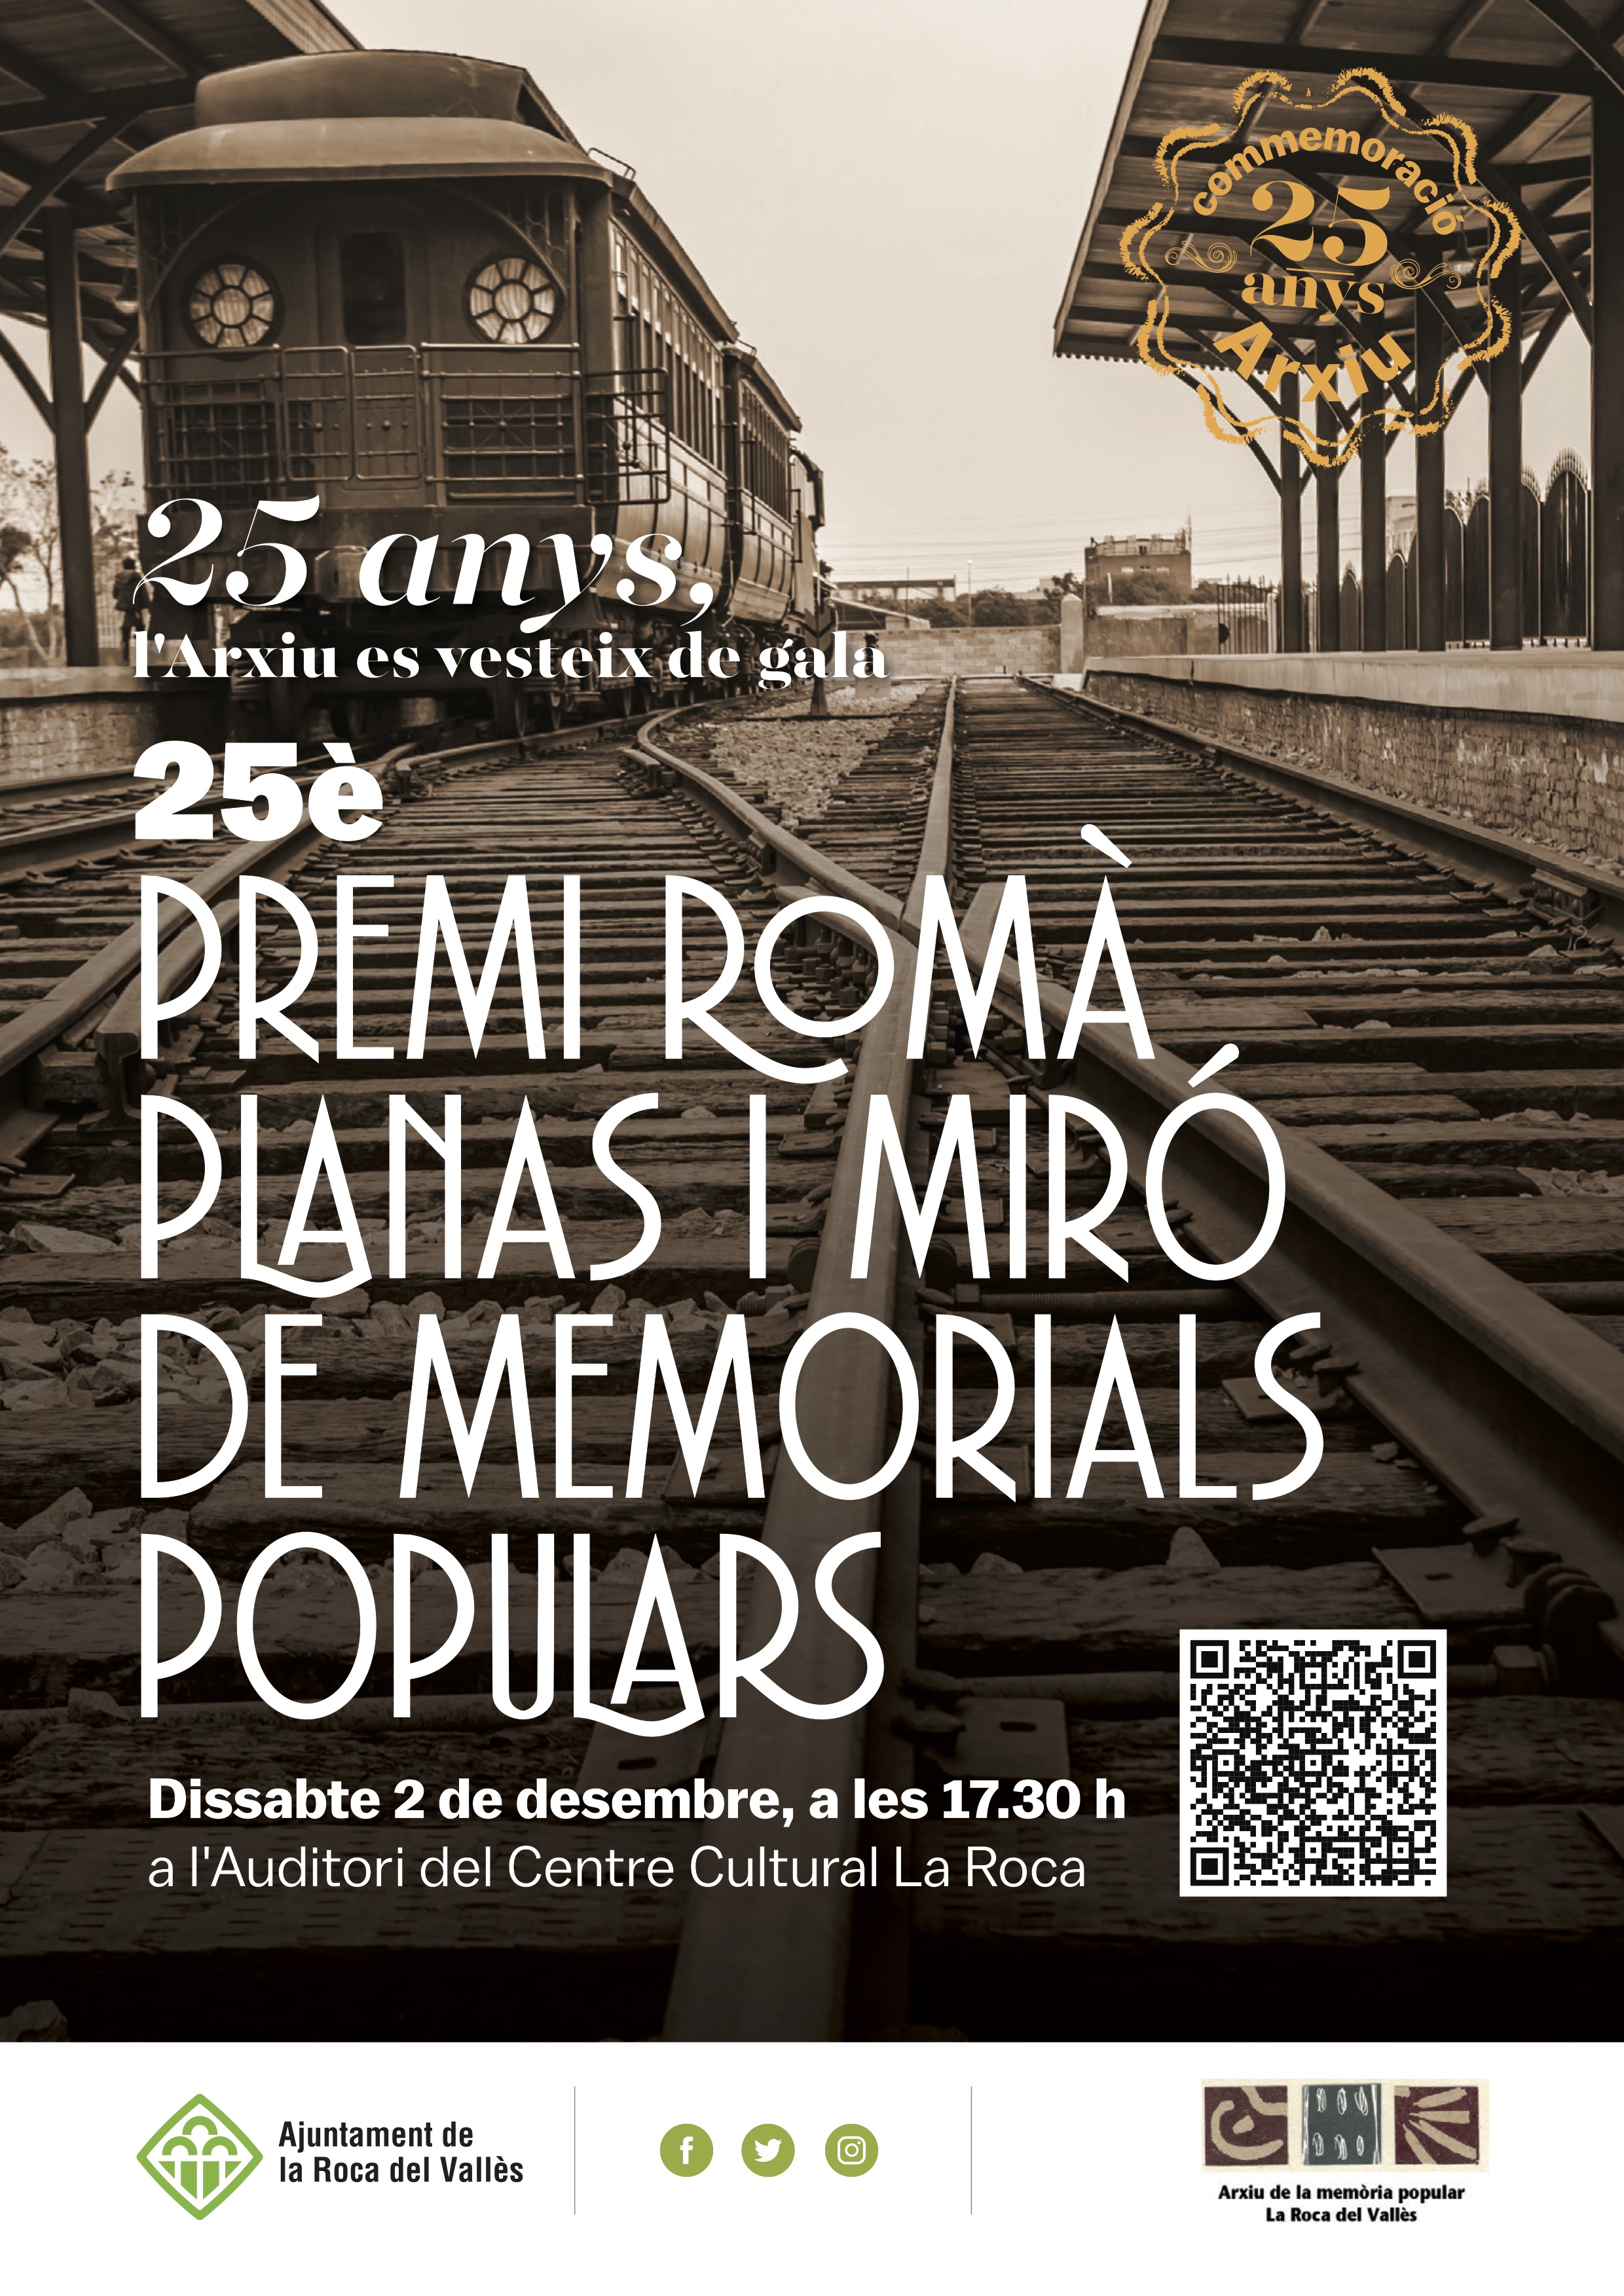 L'Arxiu de la Memòria popular de la Roca del Vallès es vesteix de gala en el 25è aniversari de la seva fundació